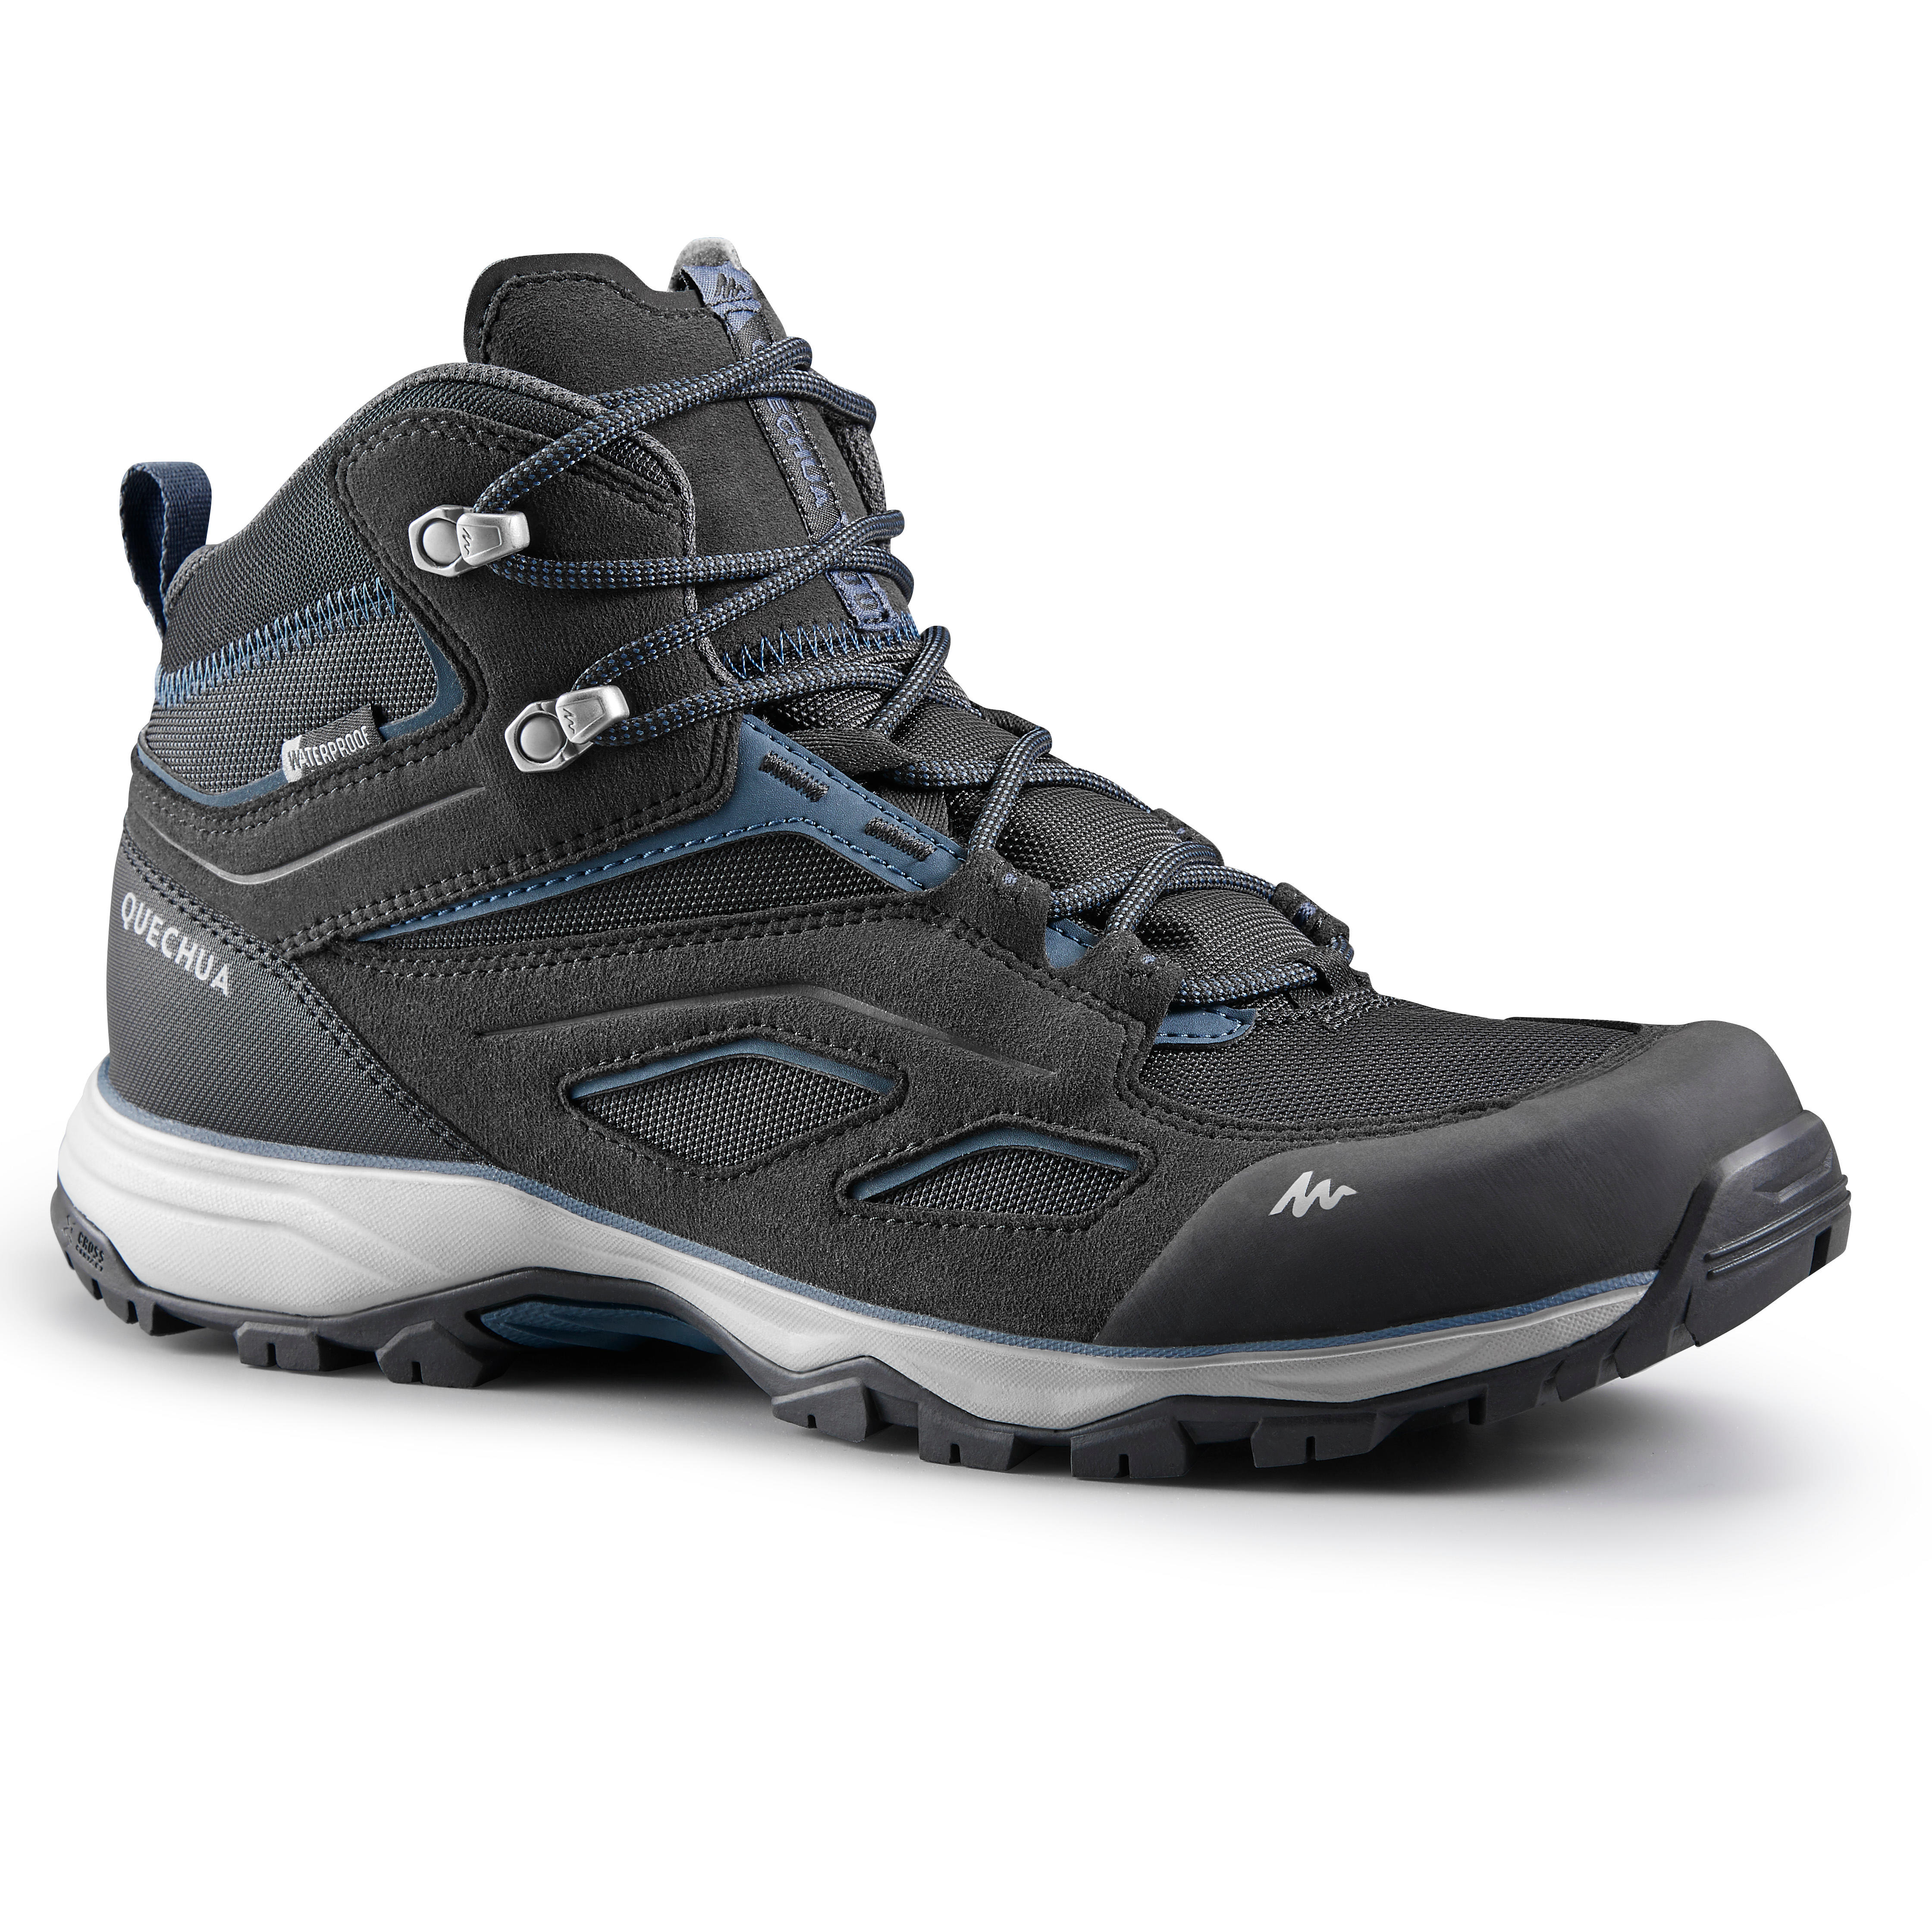 QUECHUA Chaussures imperméables de randonnée montagne - MH100 Mid Noir - Homme - QUECHUA - 42